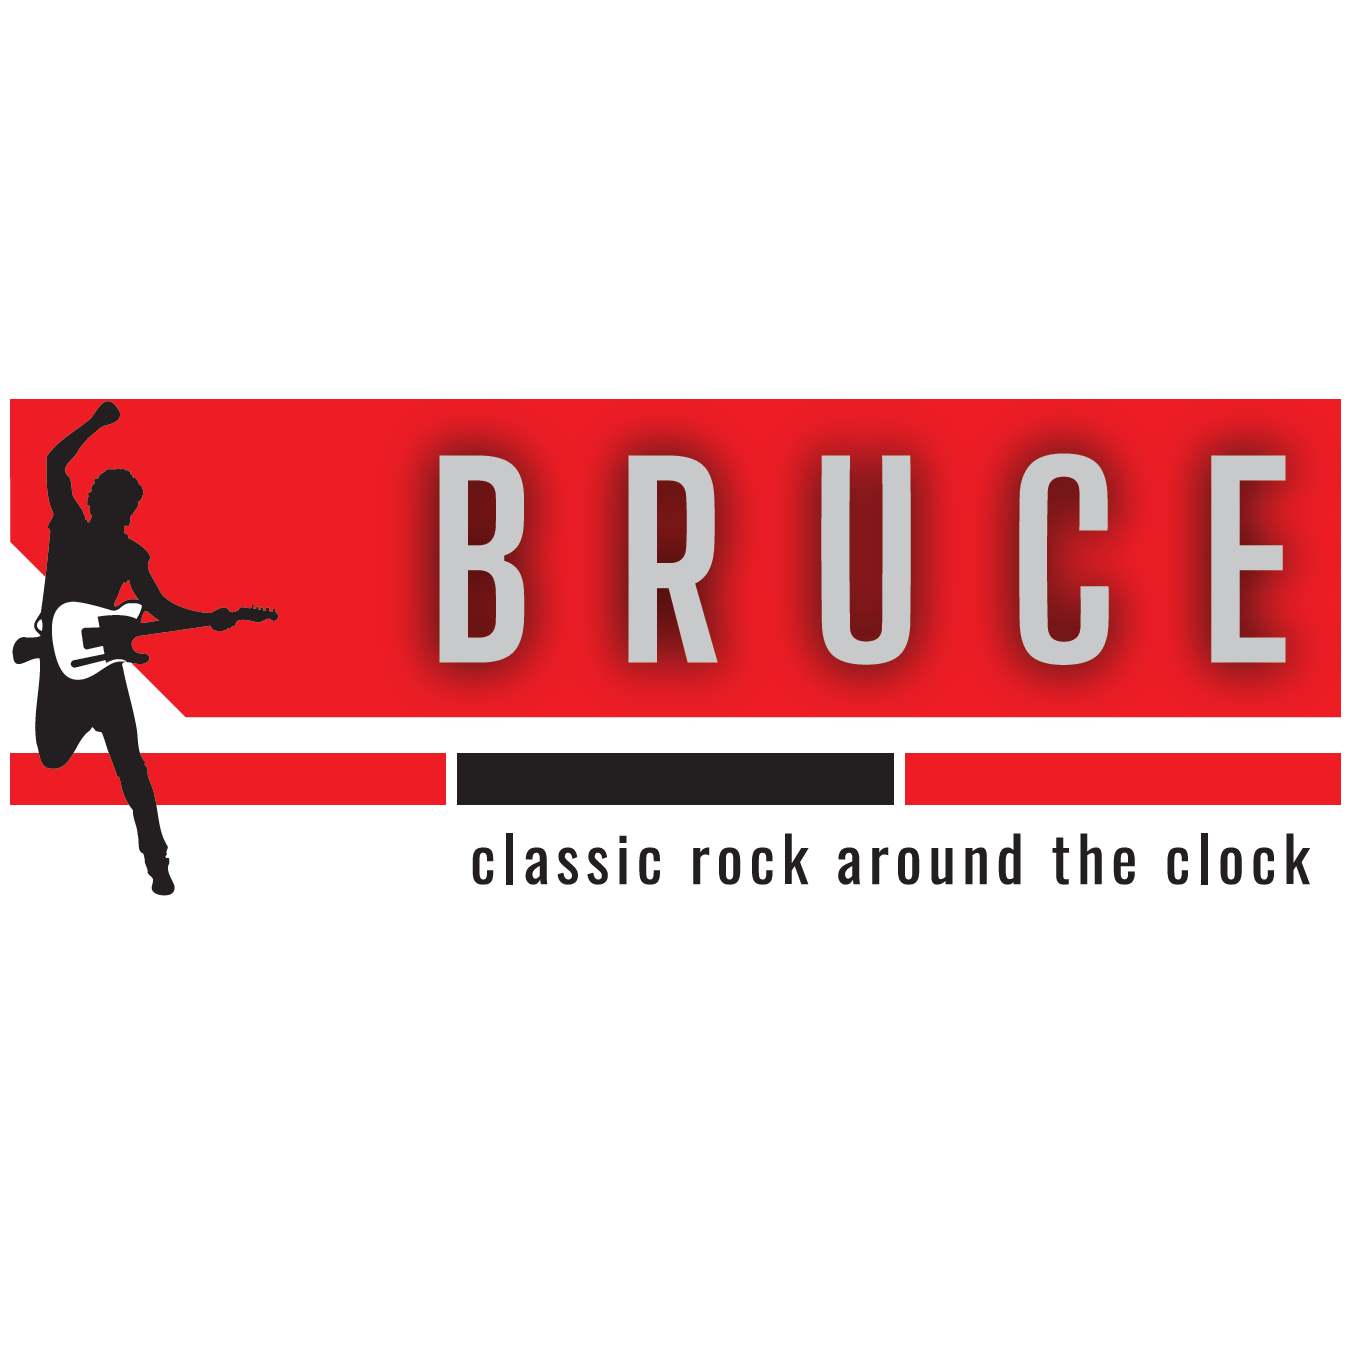 Bruce - classic rock